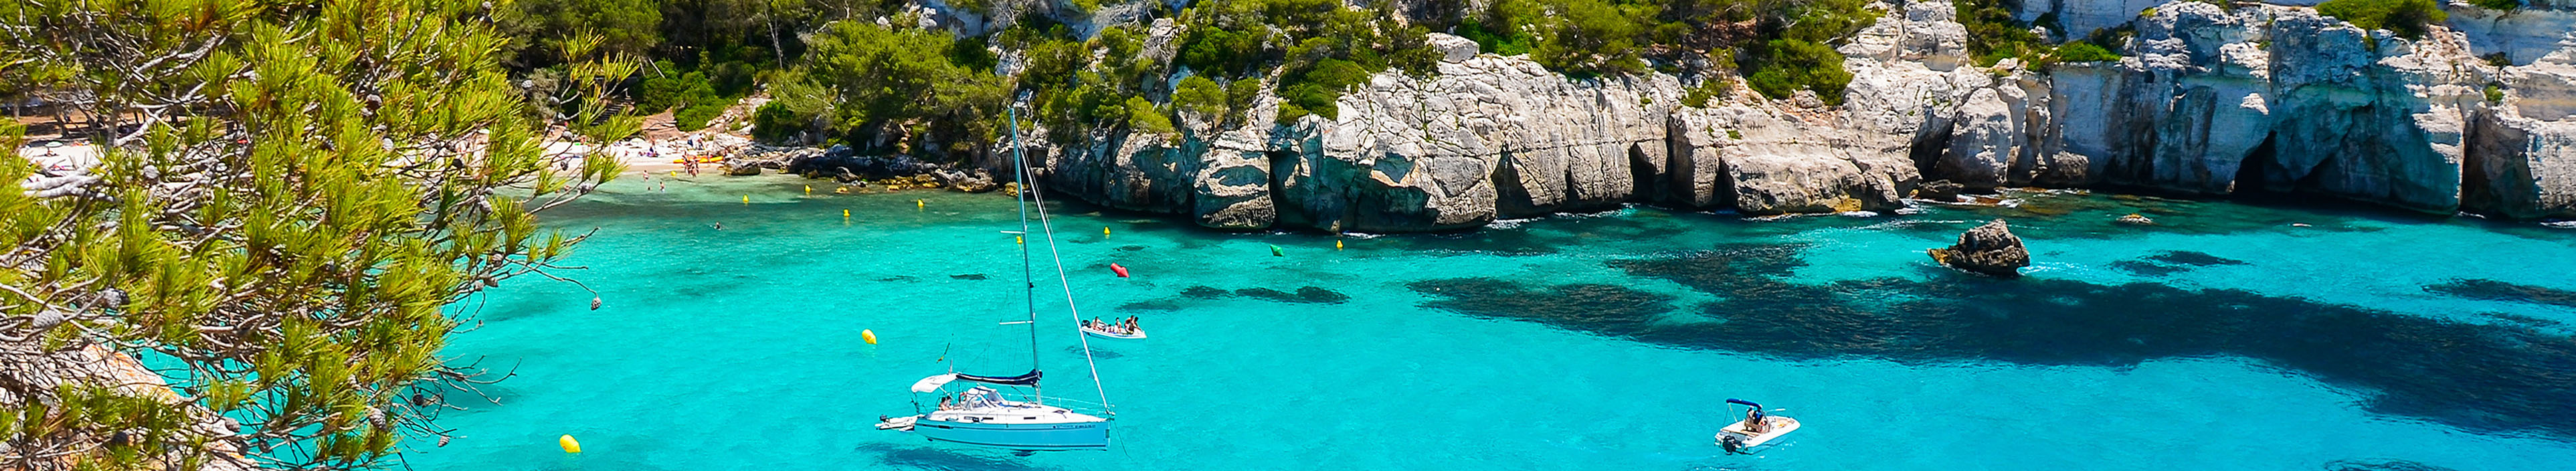 Aussicht auf türkisblaues Wasser und weiße Boote am Strand von Cala Macarelleta, Menorca.